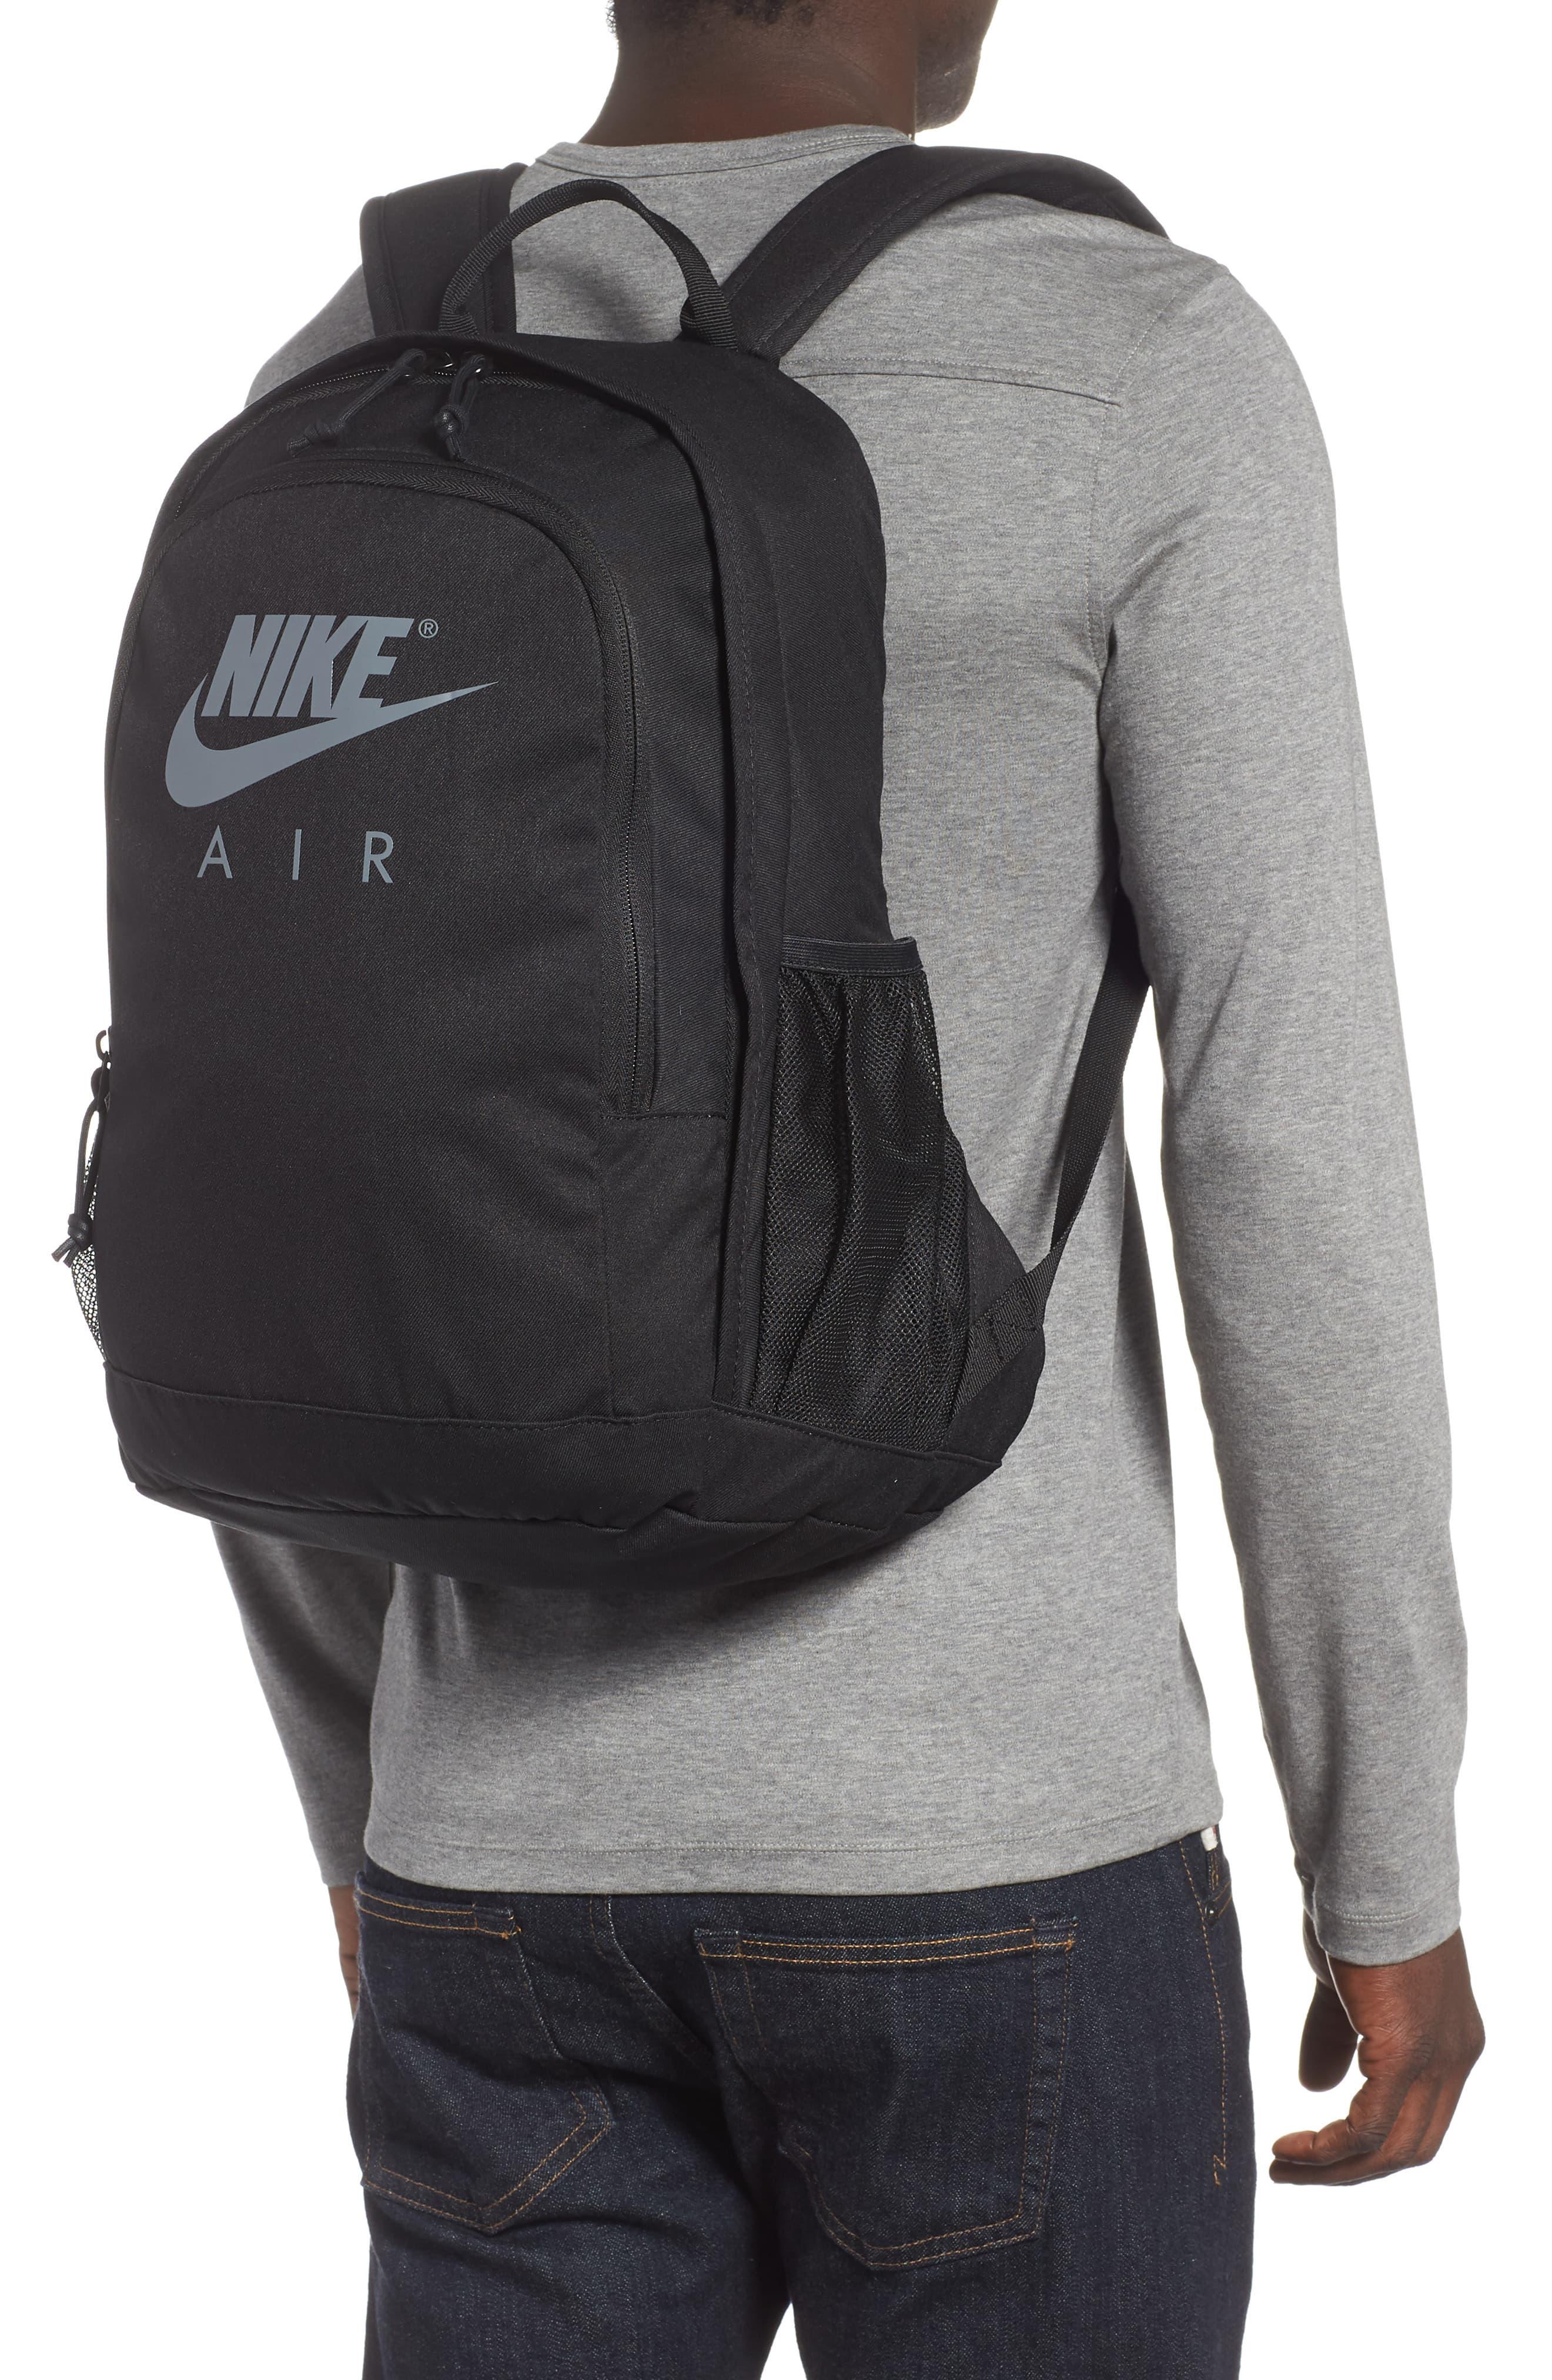 Nike Hayward Air Backpack in Black/Cool 